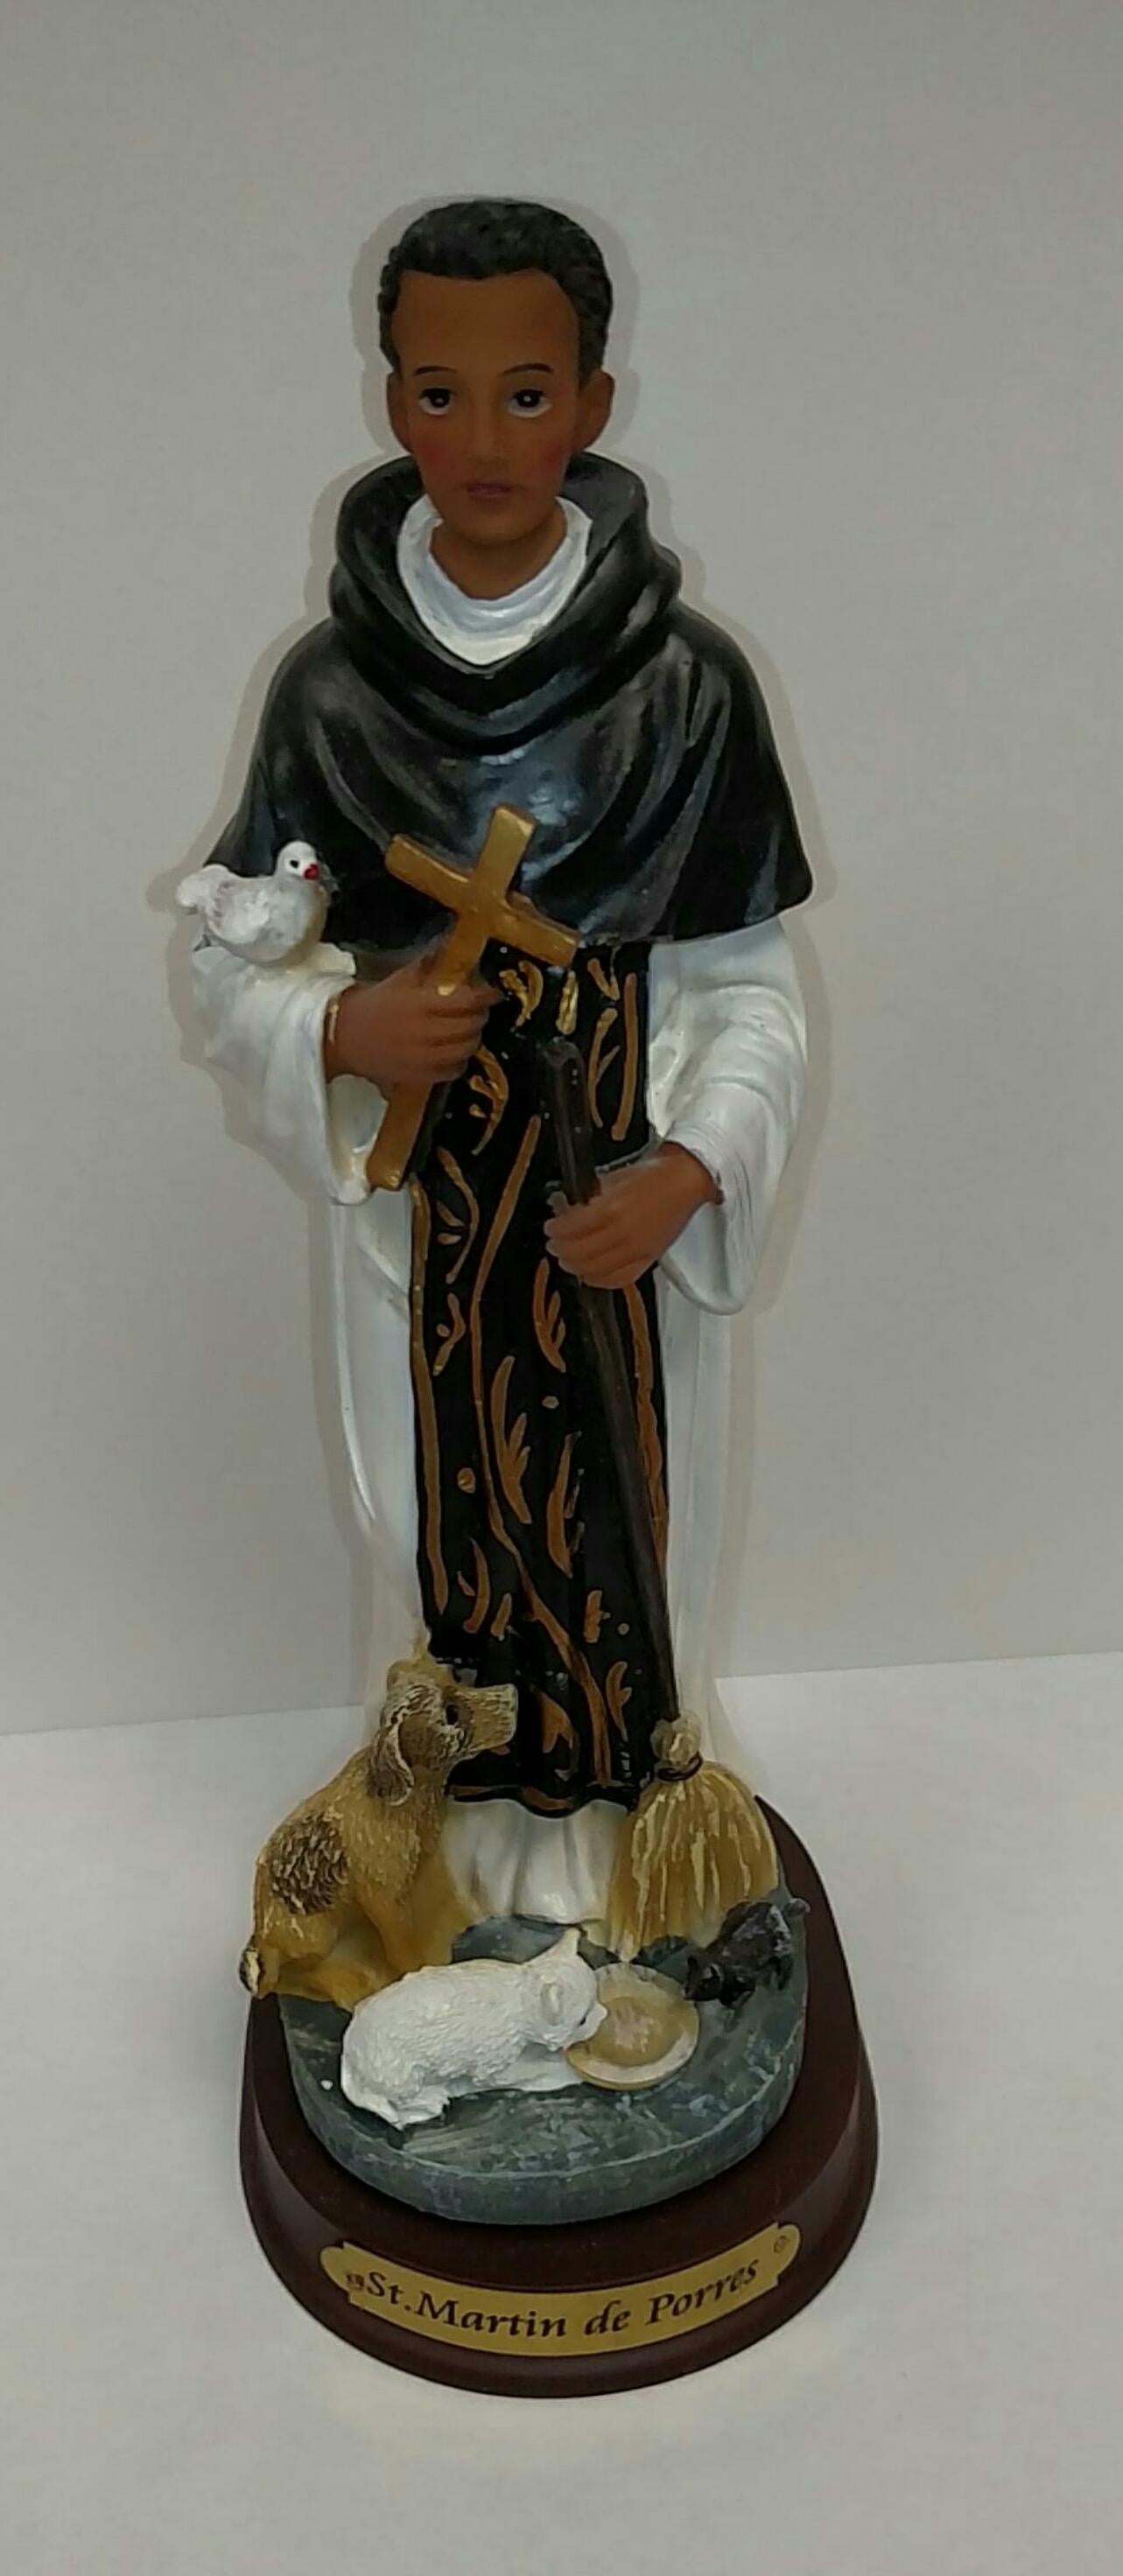 St. Martin de Porres statue, 8"